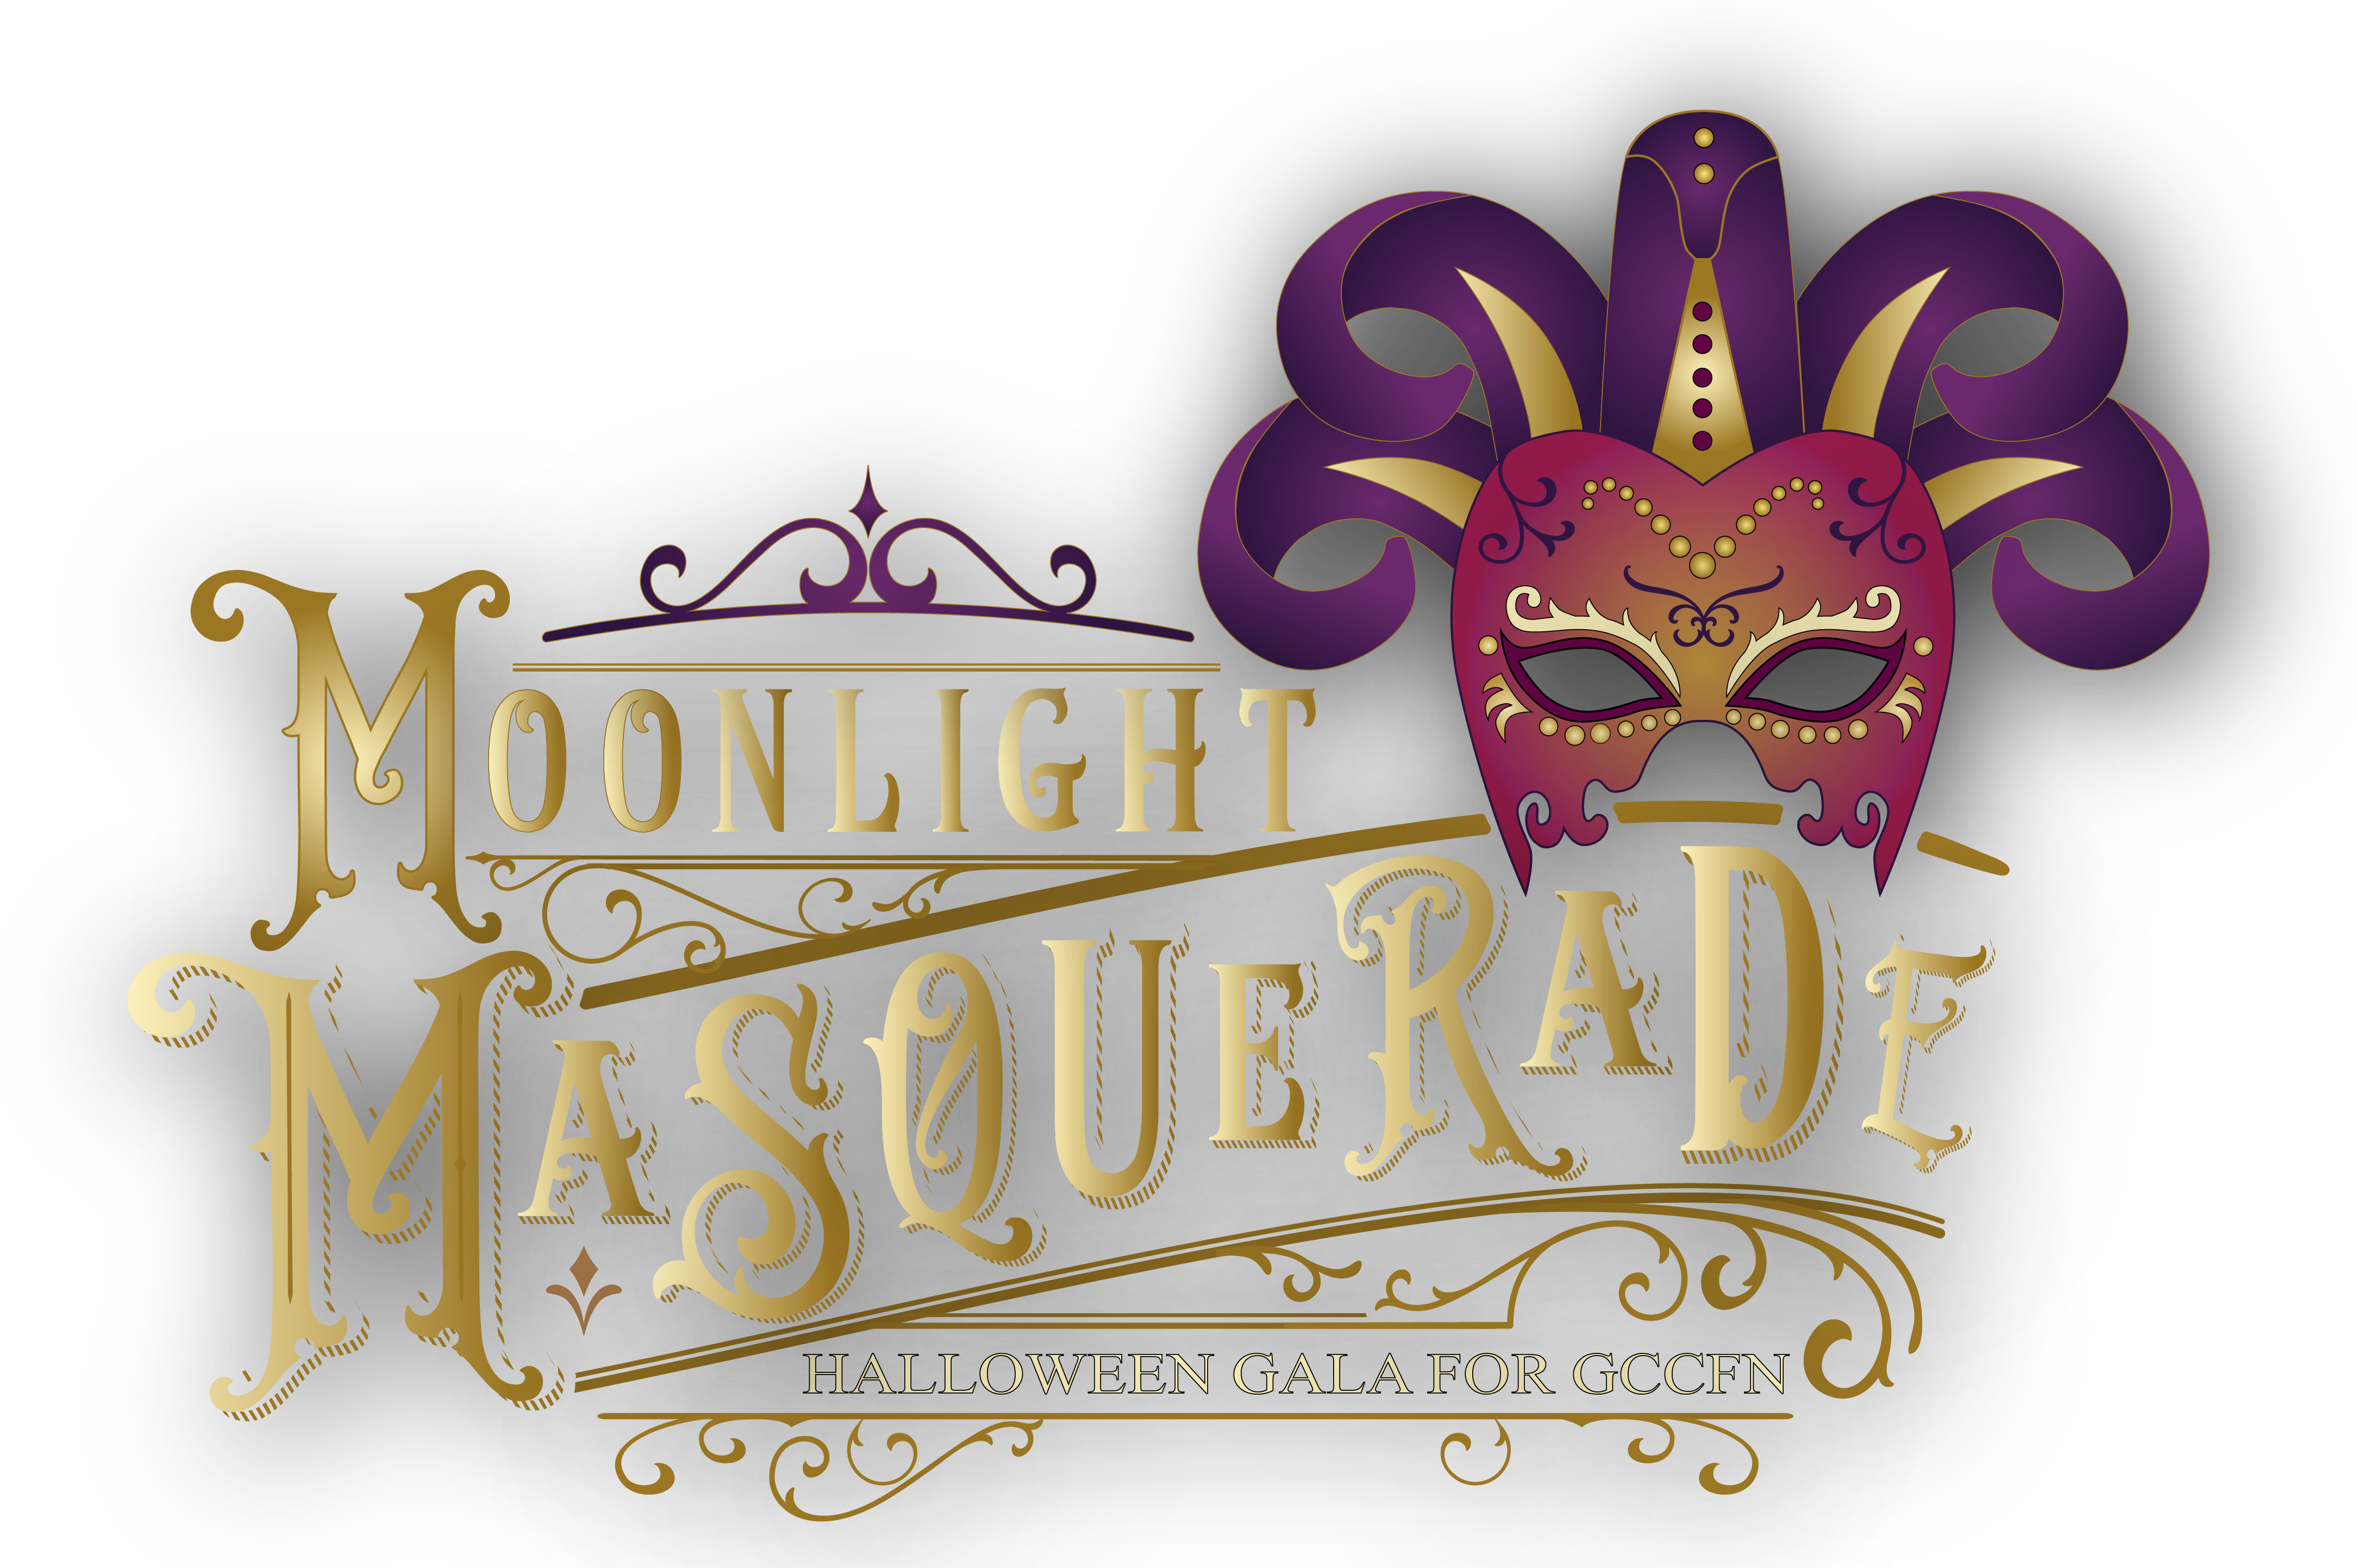 Moonlight Masquerade logo